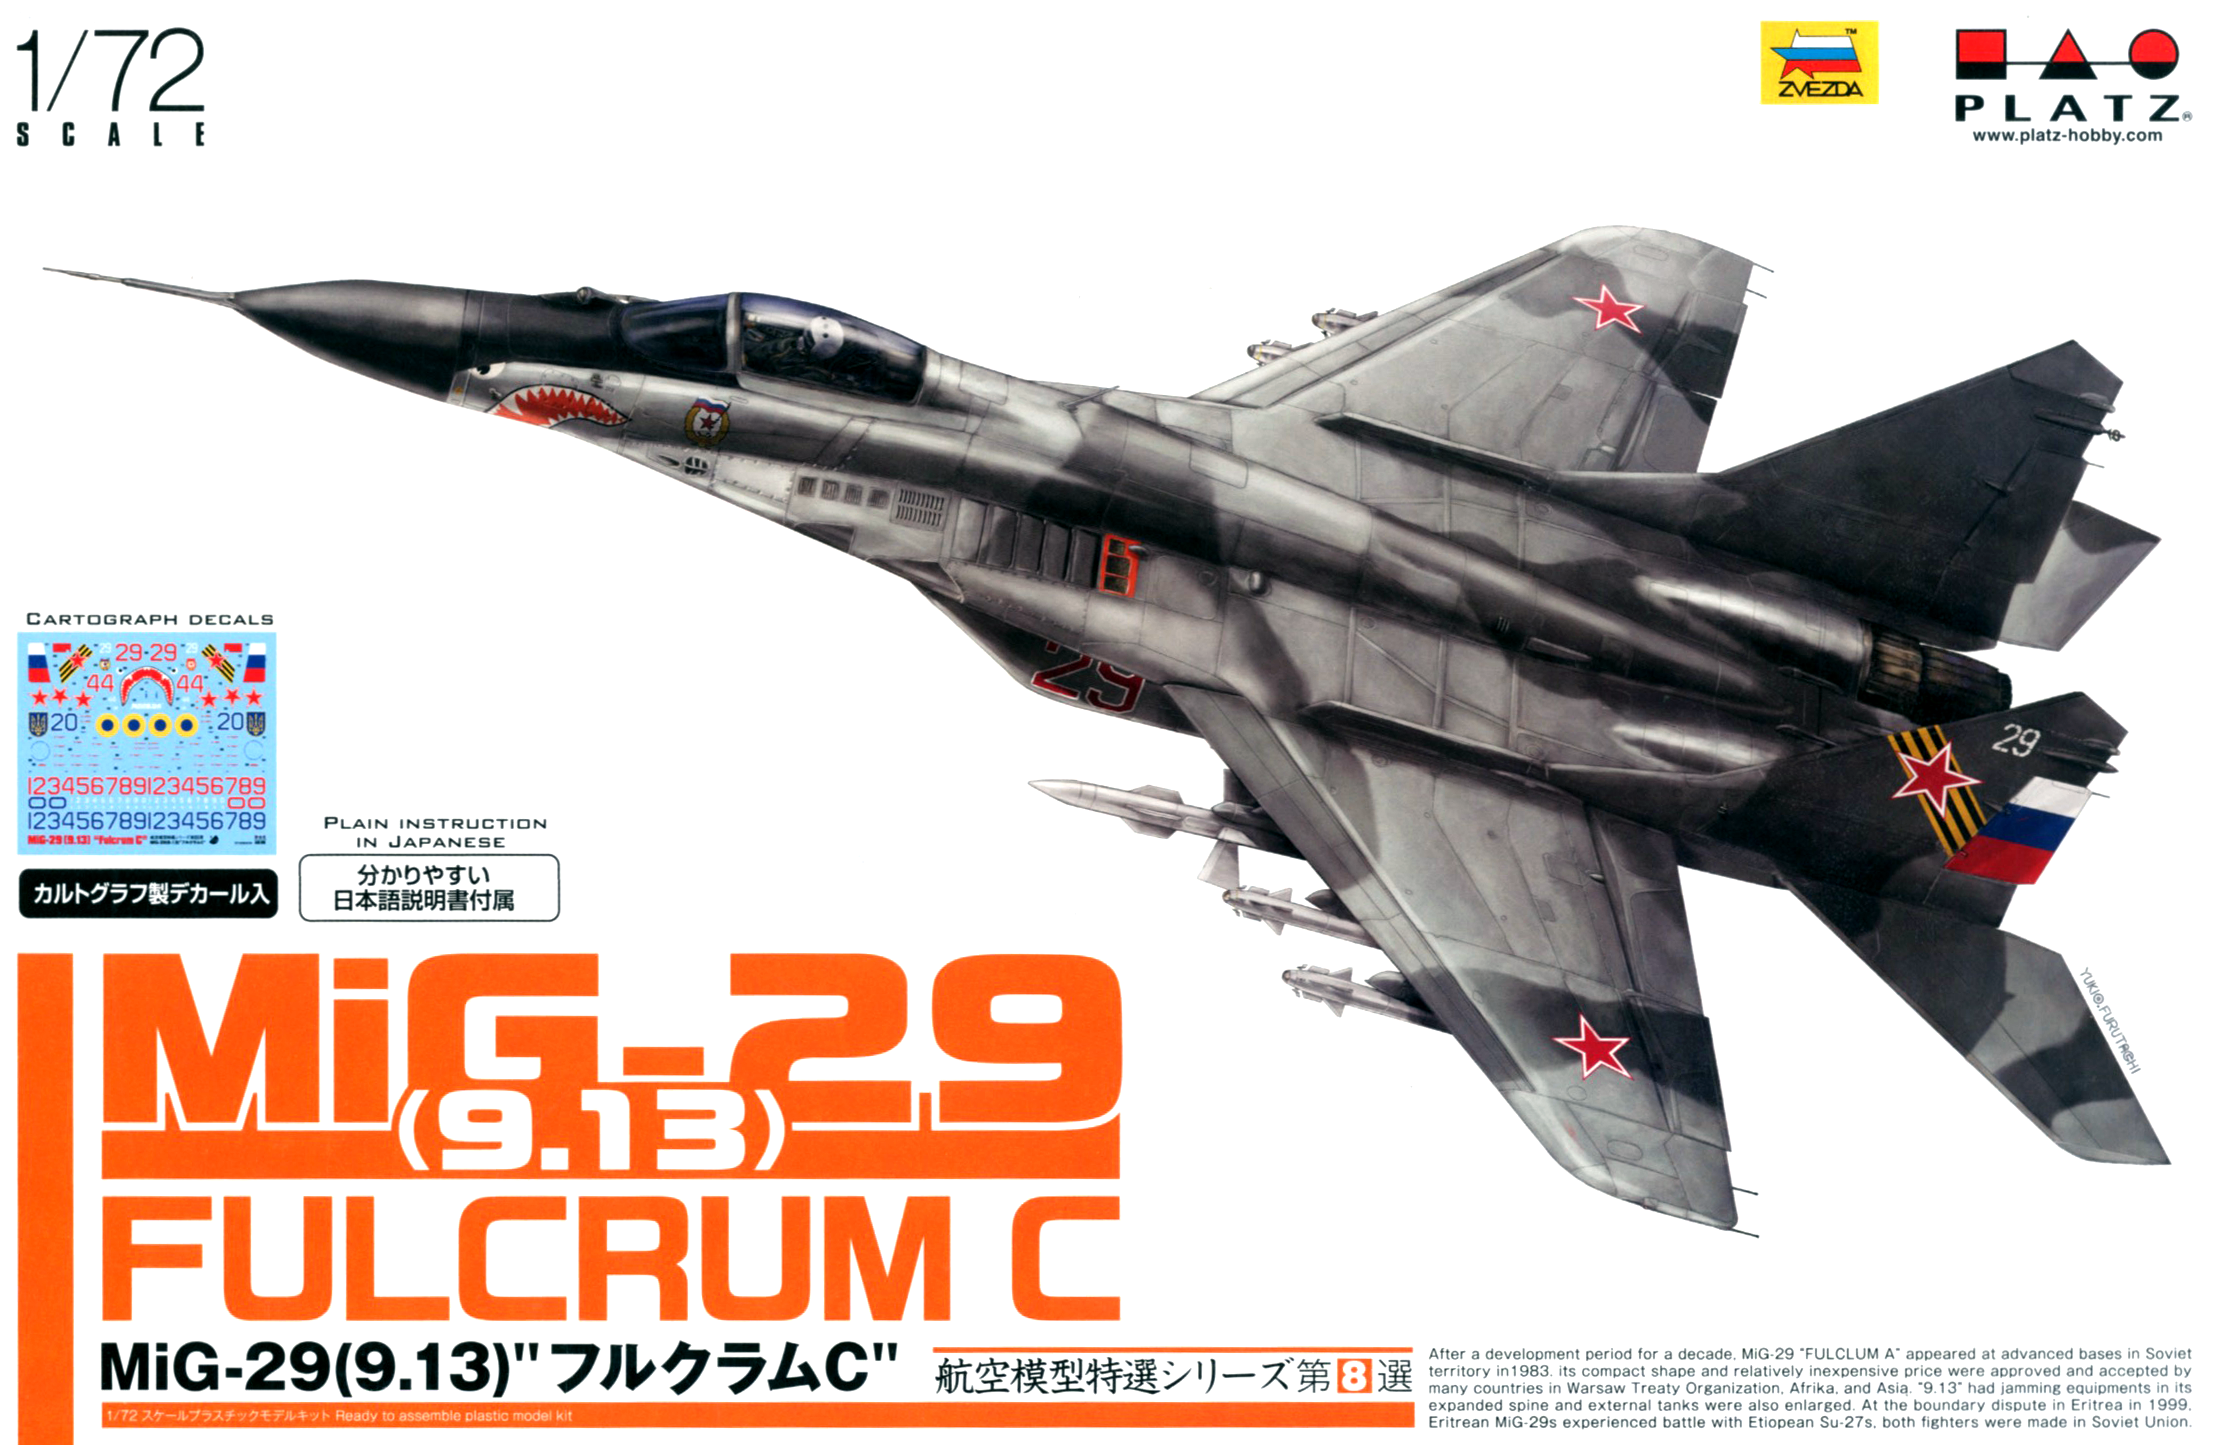 1/72 航空模型特選 MiG-29 (9.13) フルクラムC